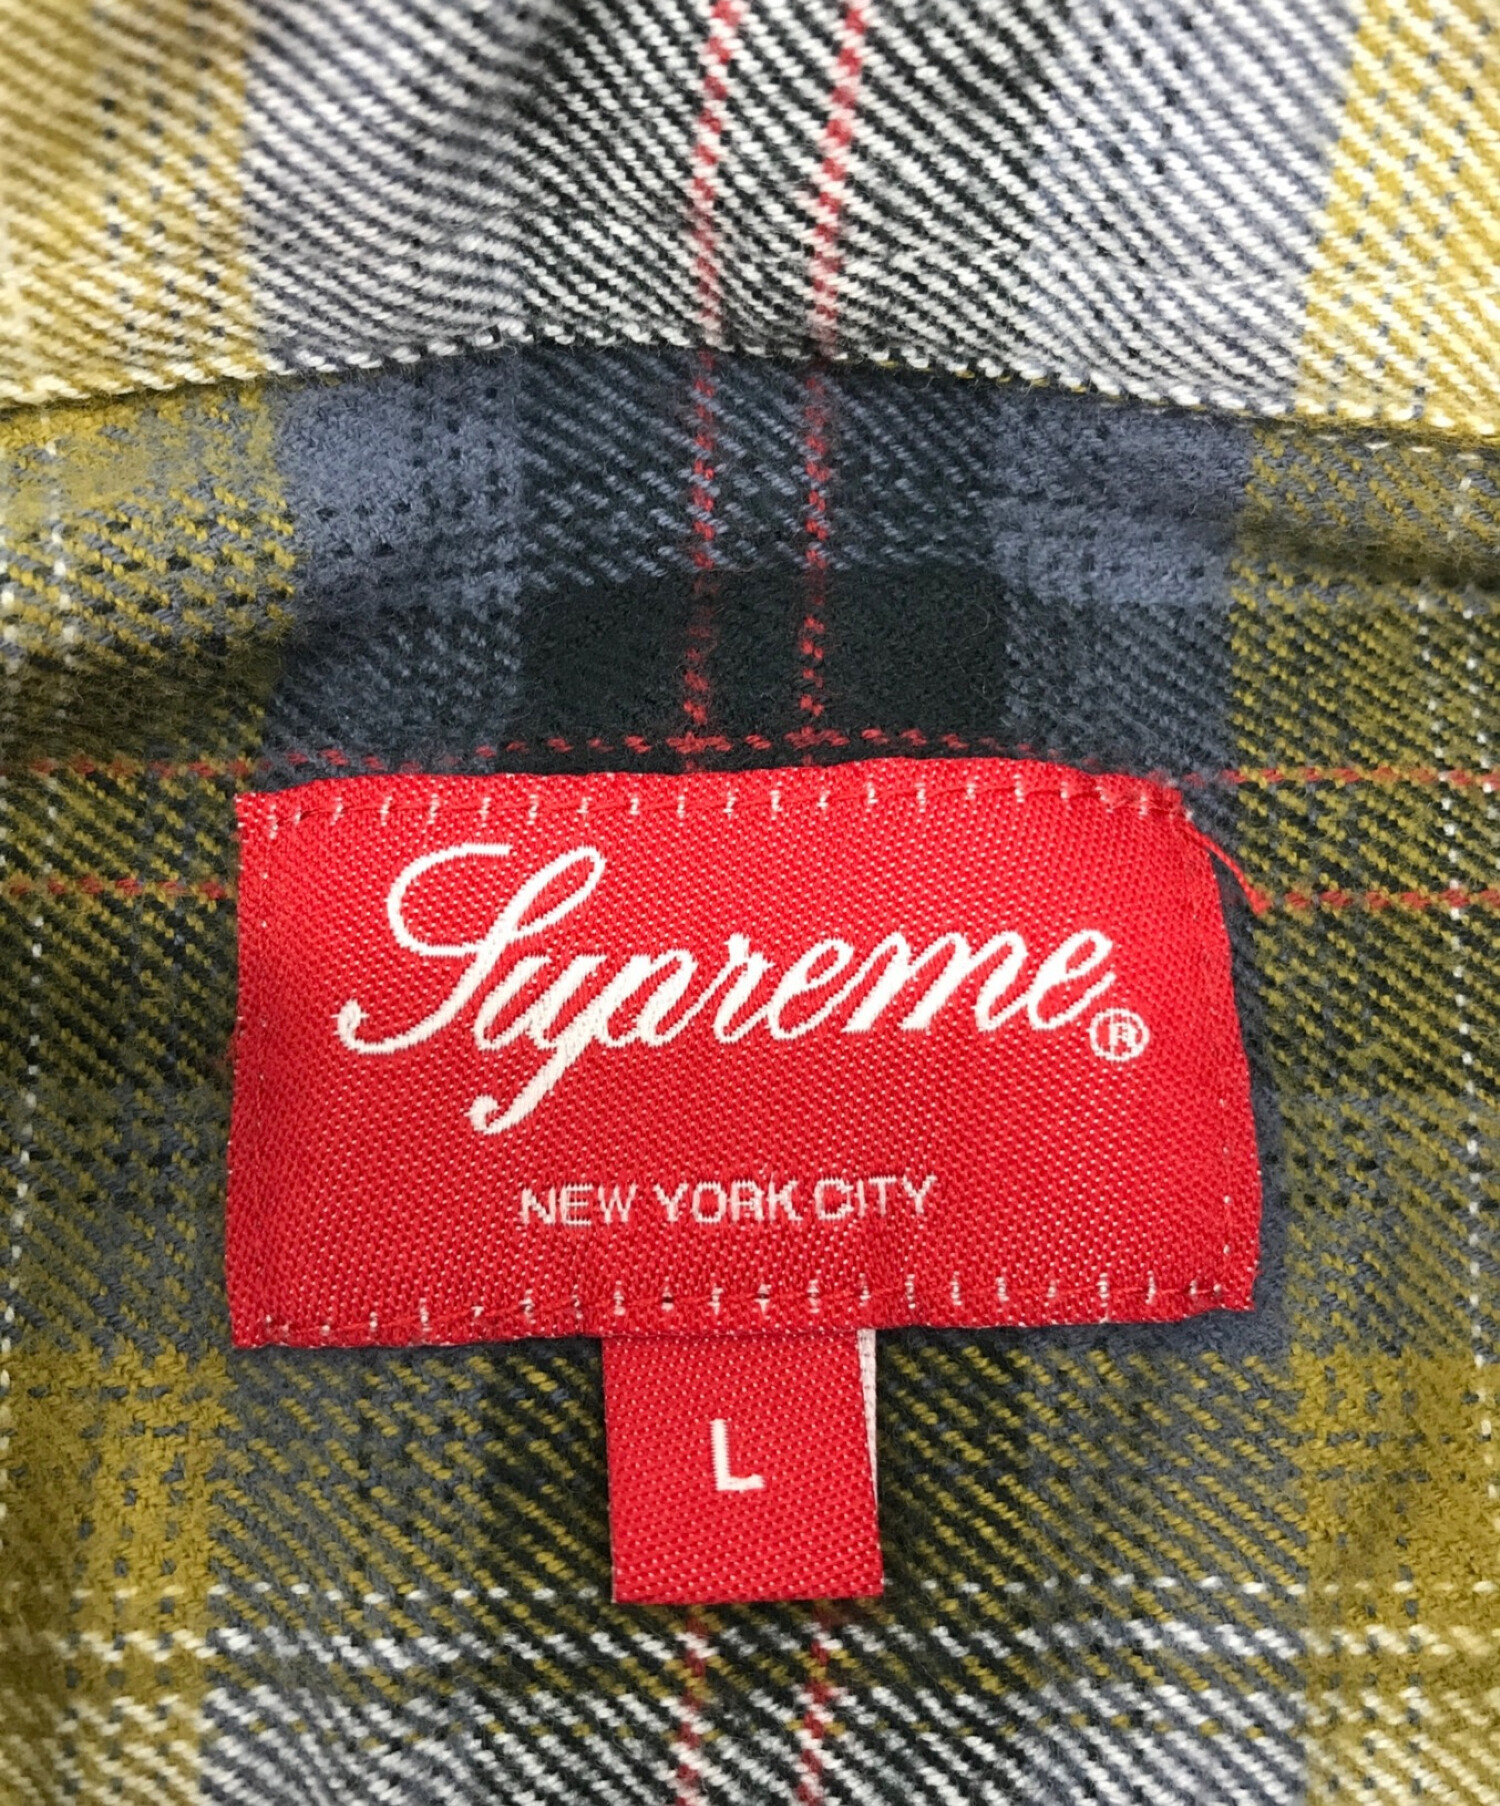 希少 XLサイズ Supreme tartan flannel シャツ